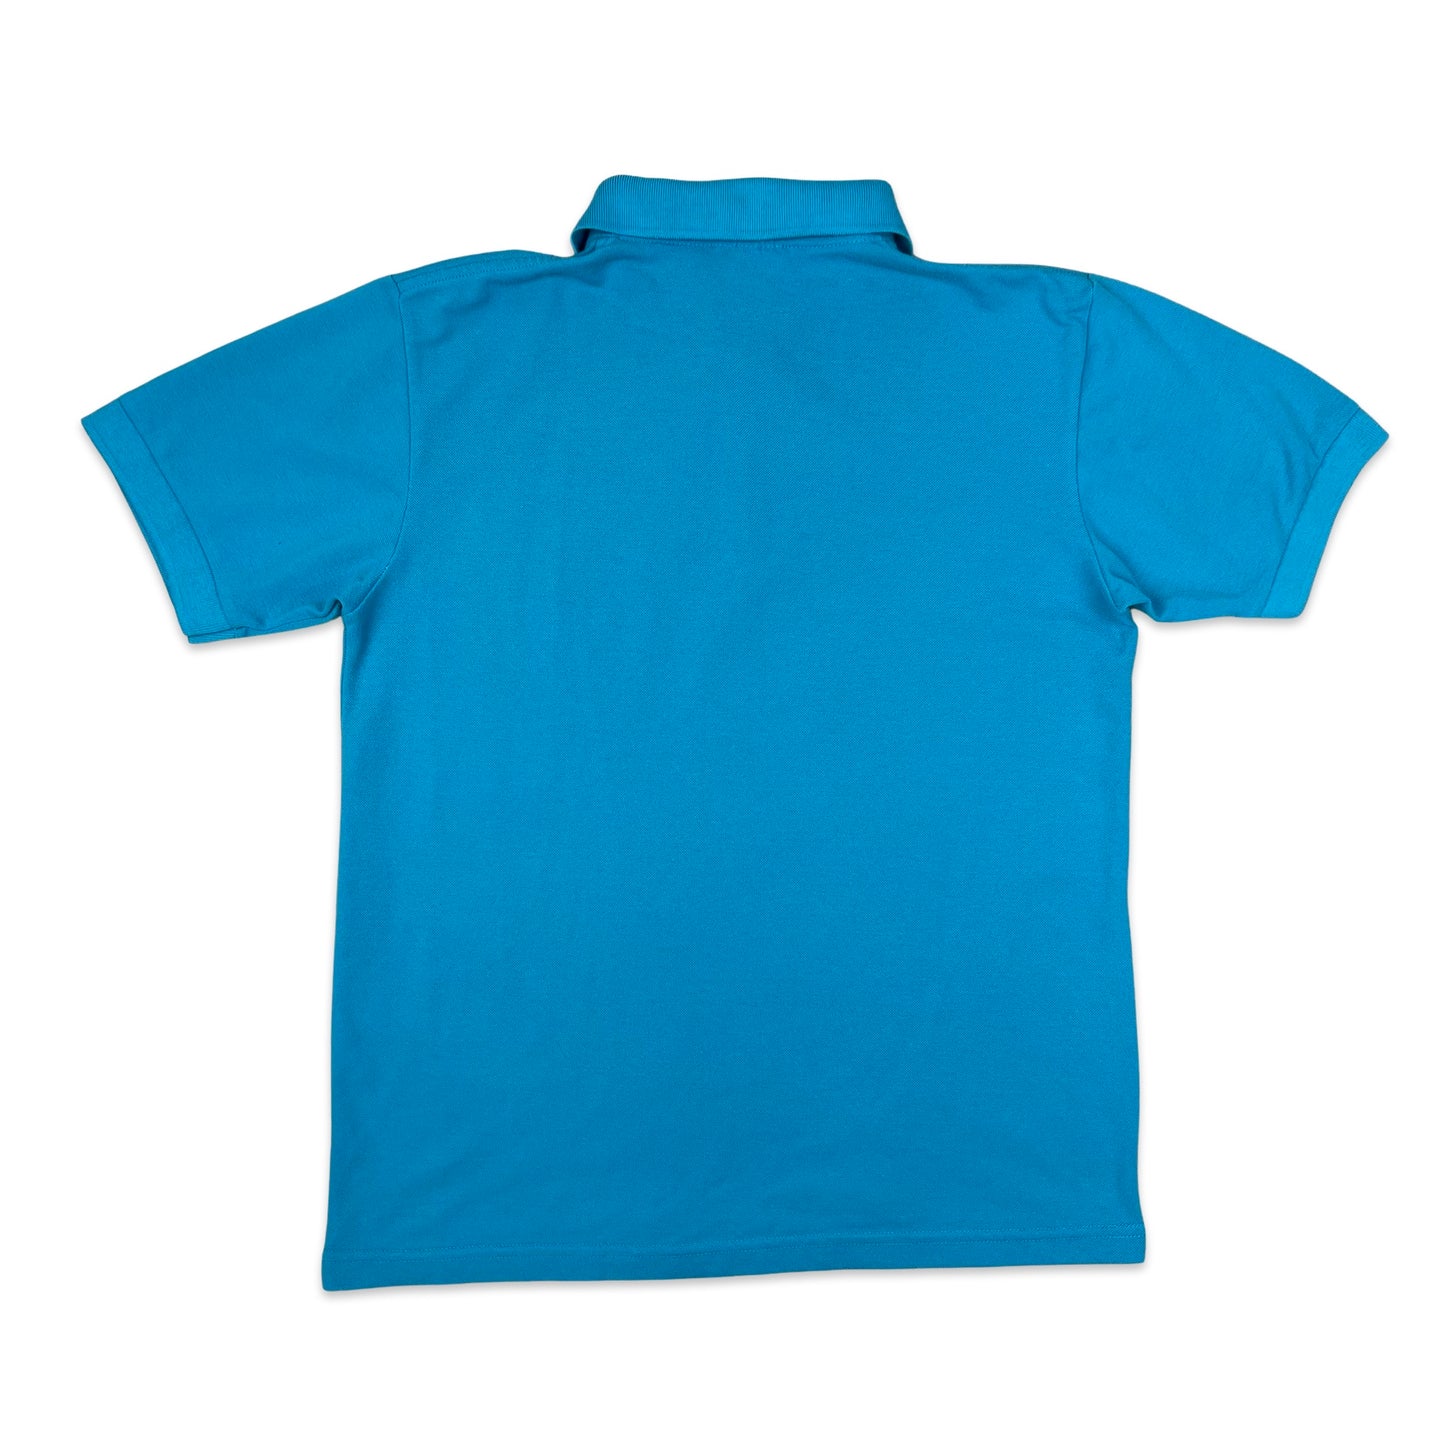 Vintage 80s Chemise Lacoste Light Blue Polo Shirt S M